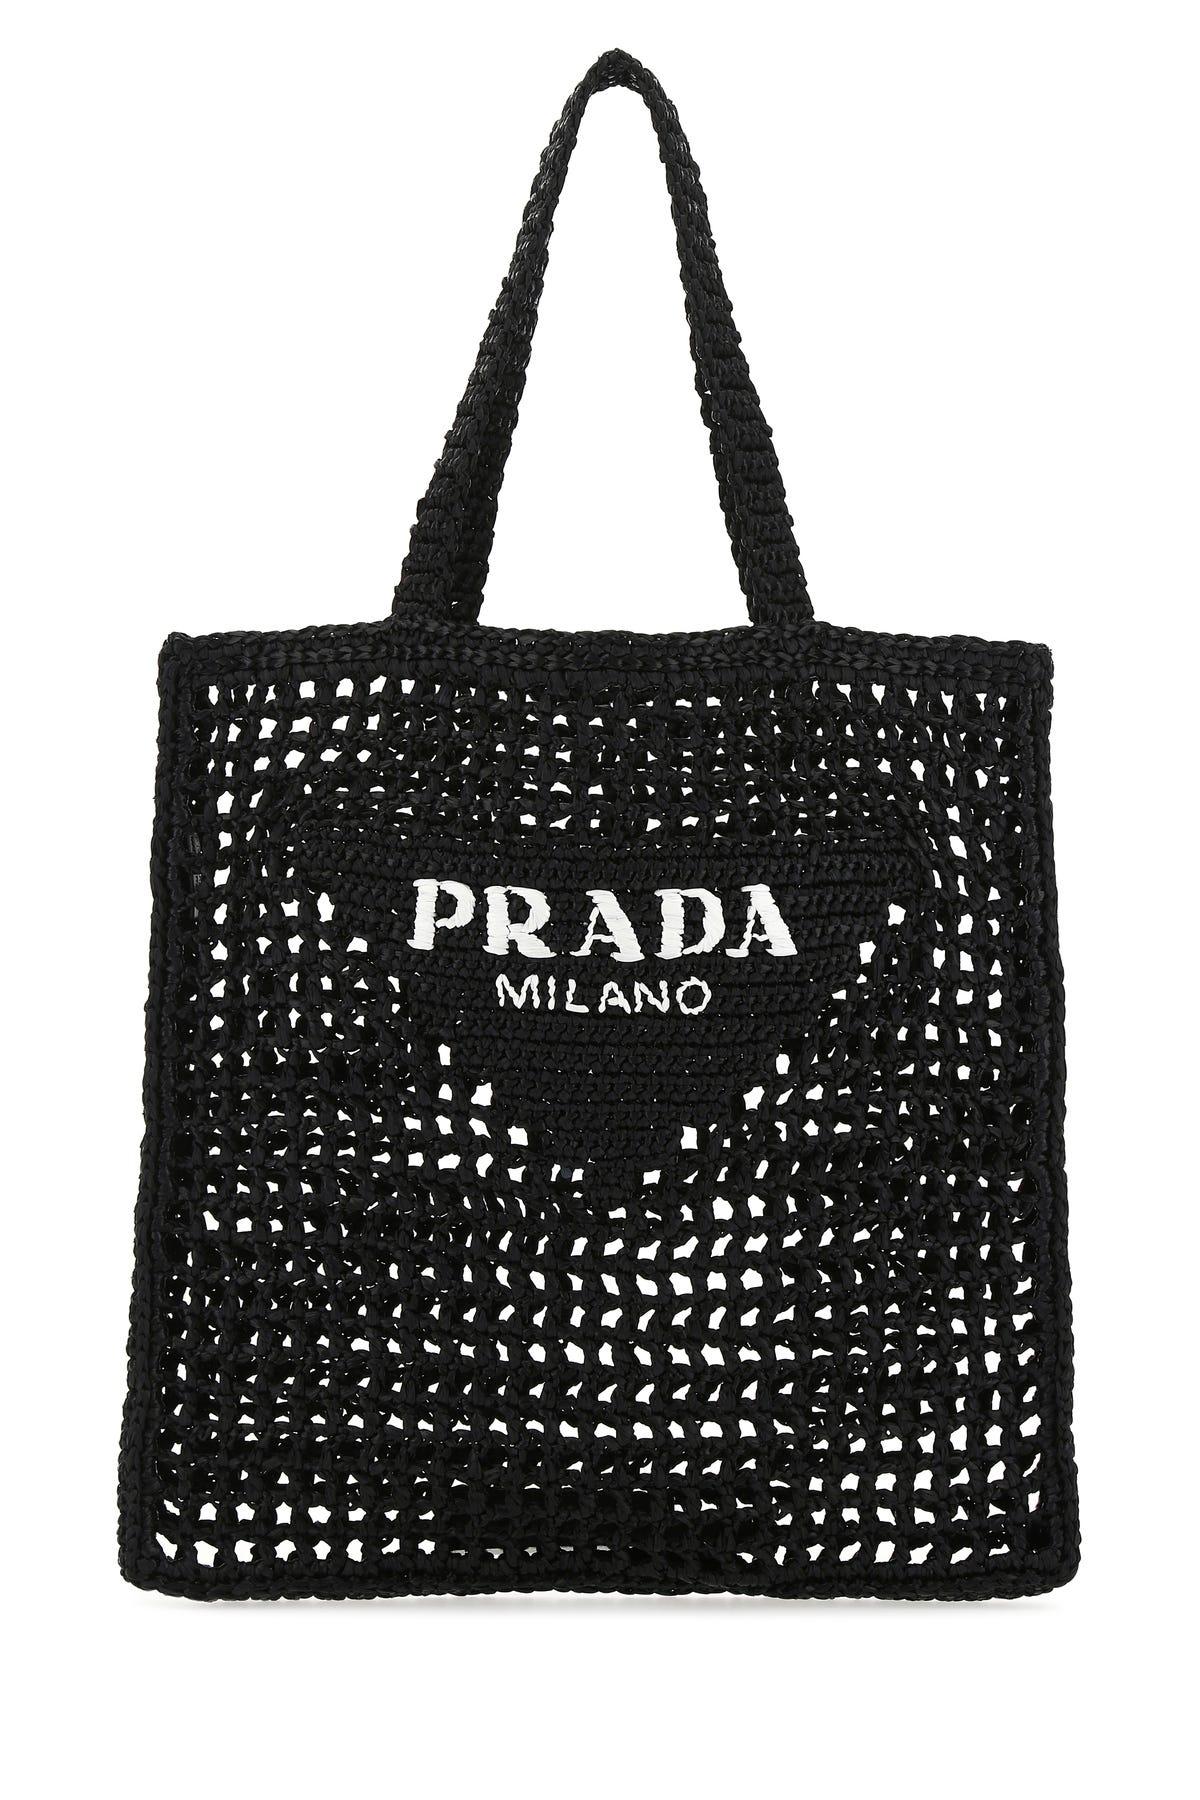 Prada Raffia Tote Bag in Black | Lyst